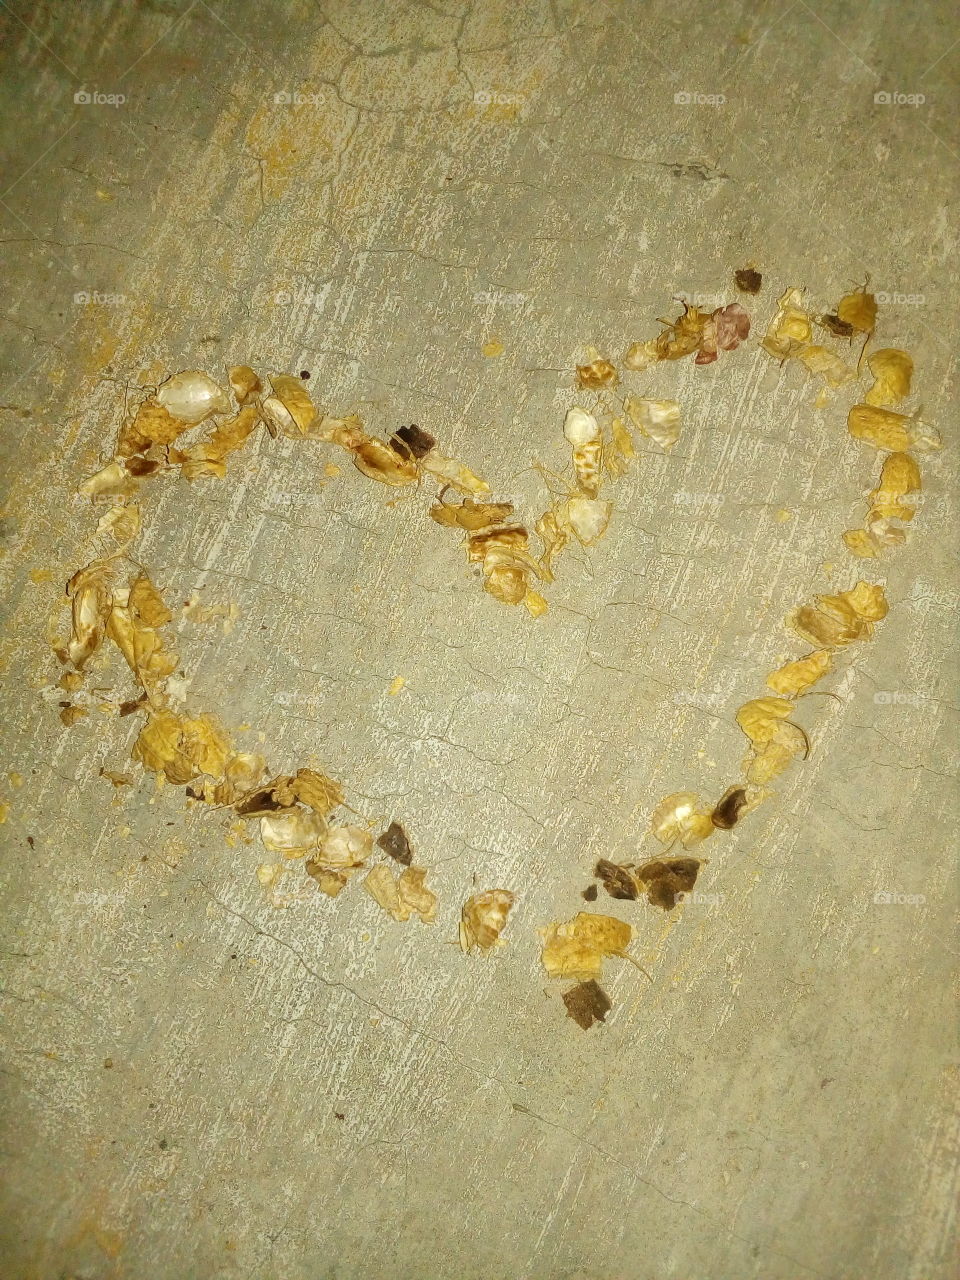 Peanut shells.